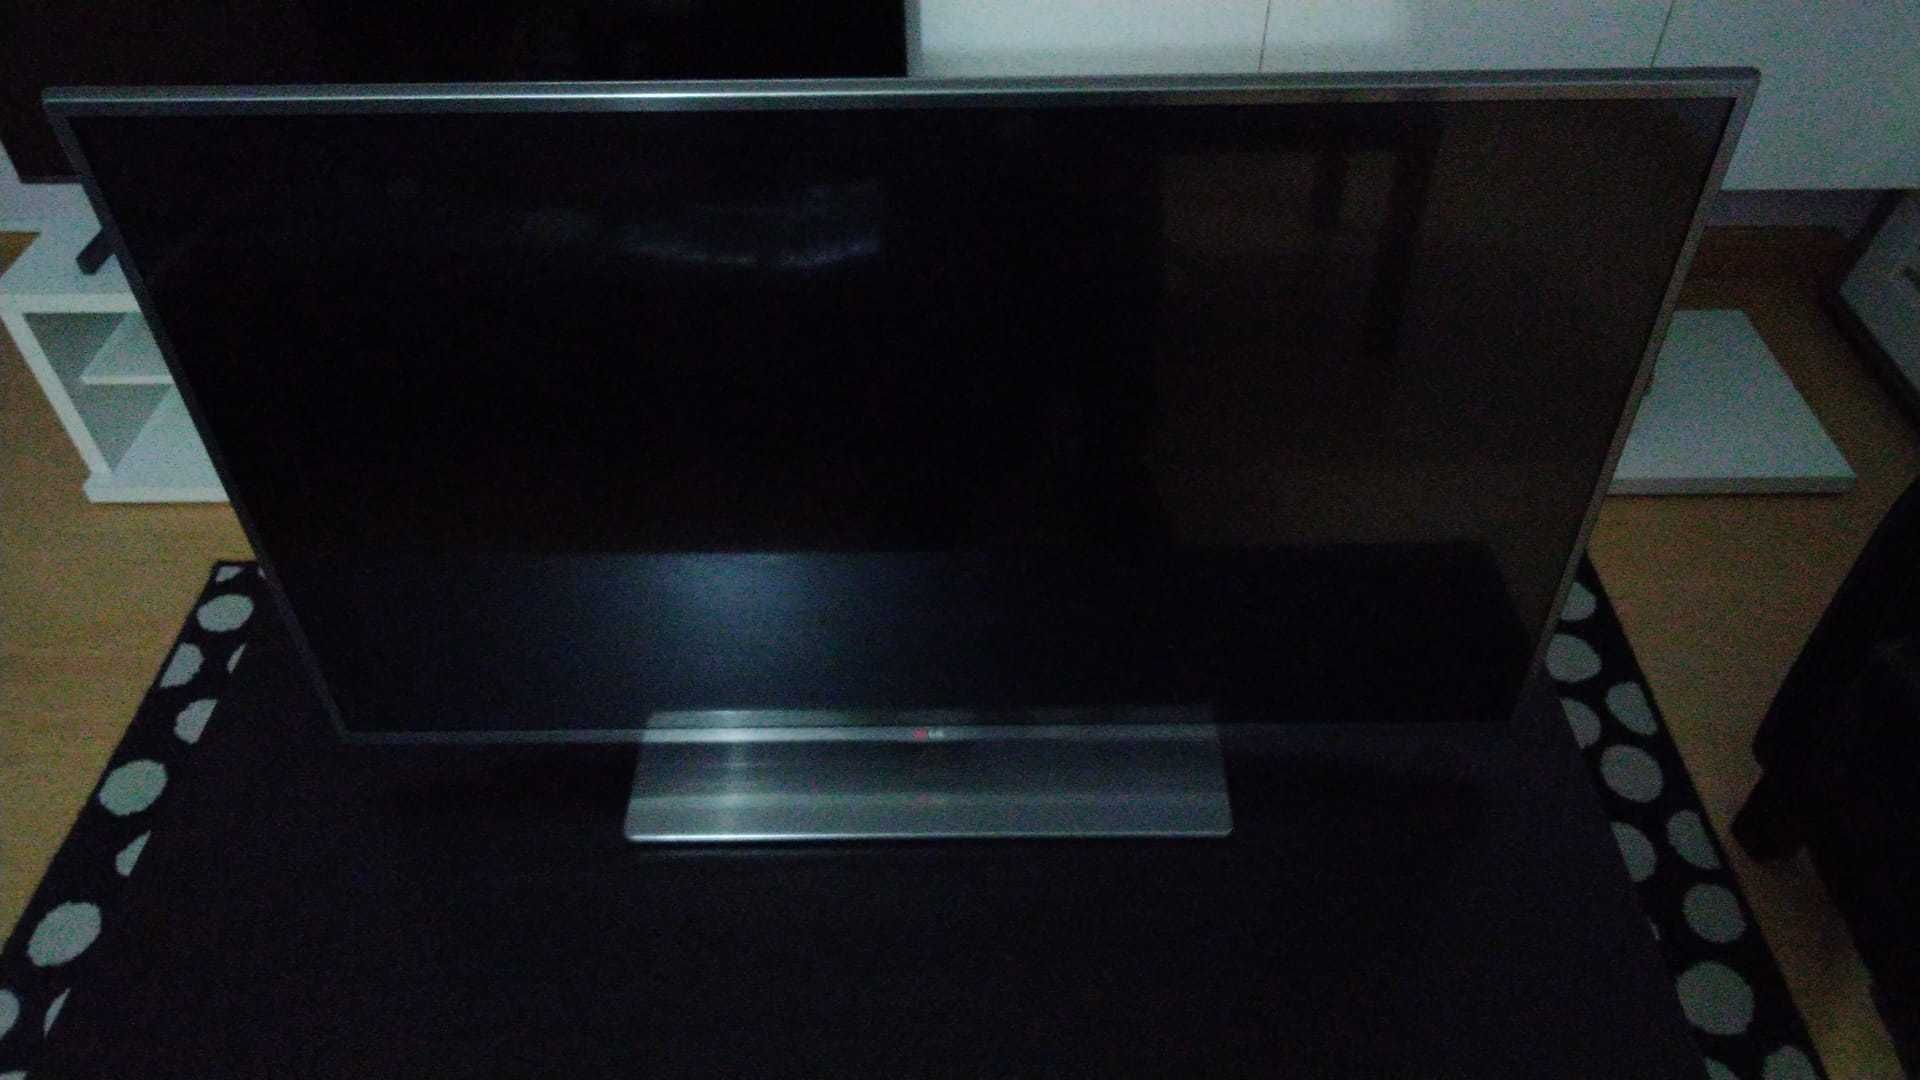 LG Smart TV - 42'' (107cm) Cinema 3D (perfeito estado)